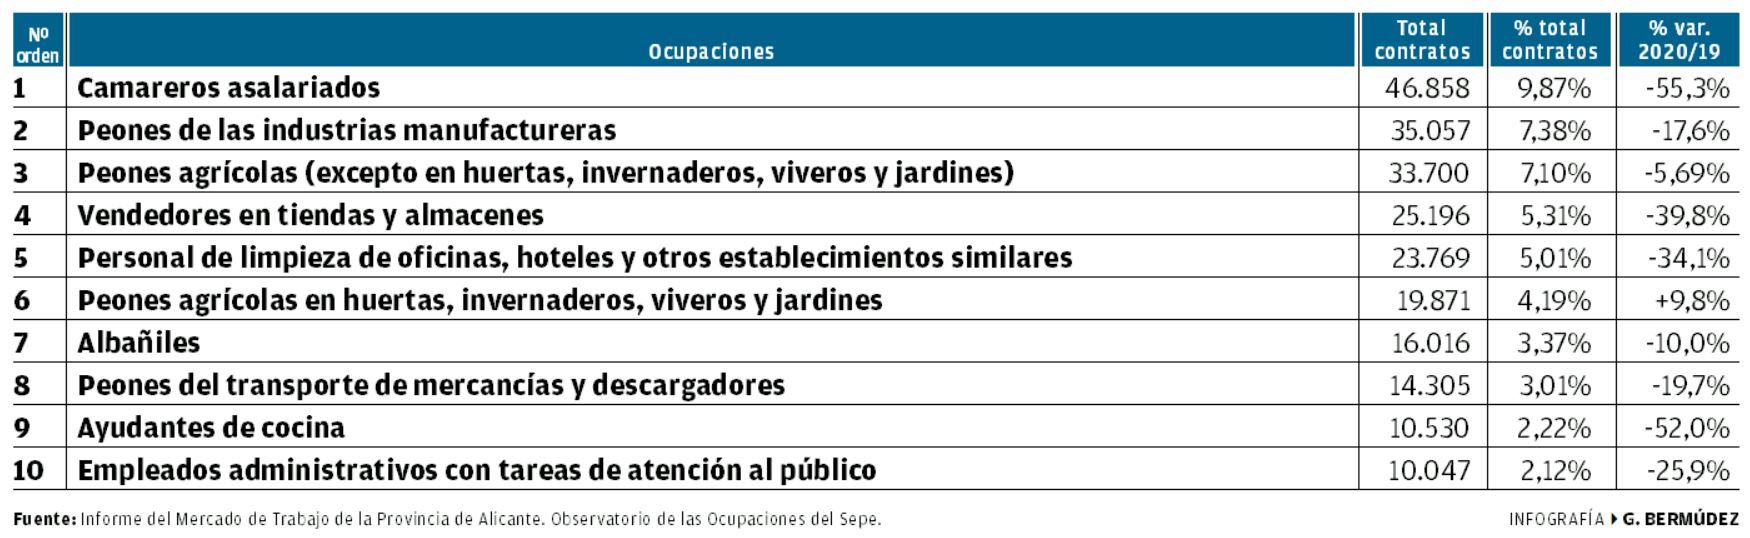 Informe del Mercado de Trabajo de la provincia de Alicante.